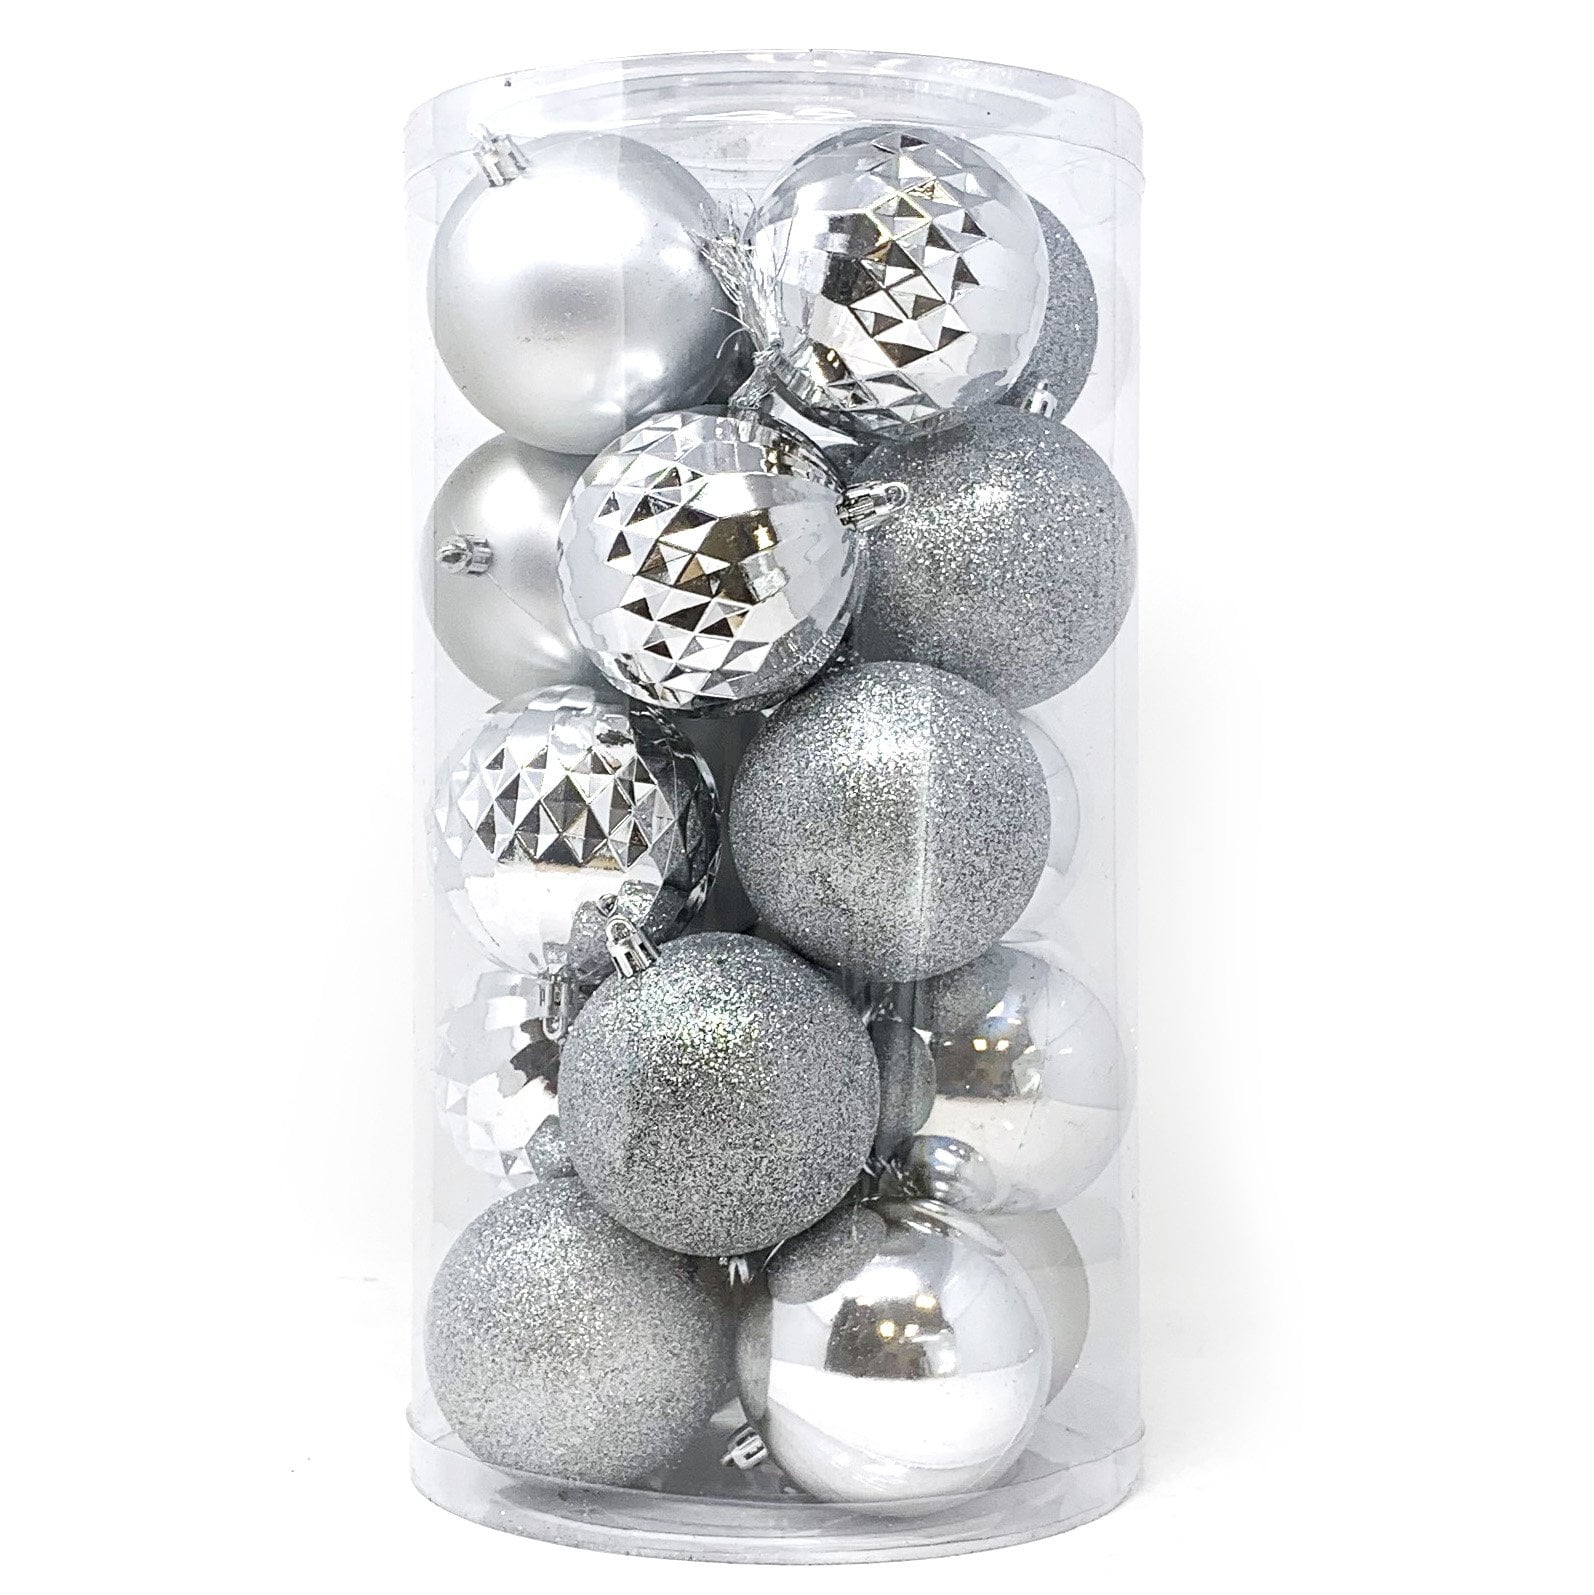 Allgala 20 PK 3 Inch (8CM) Large Christmas Ornament Balls for Xmas Tree ...